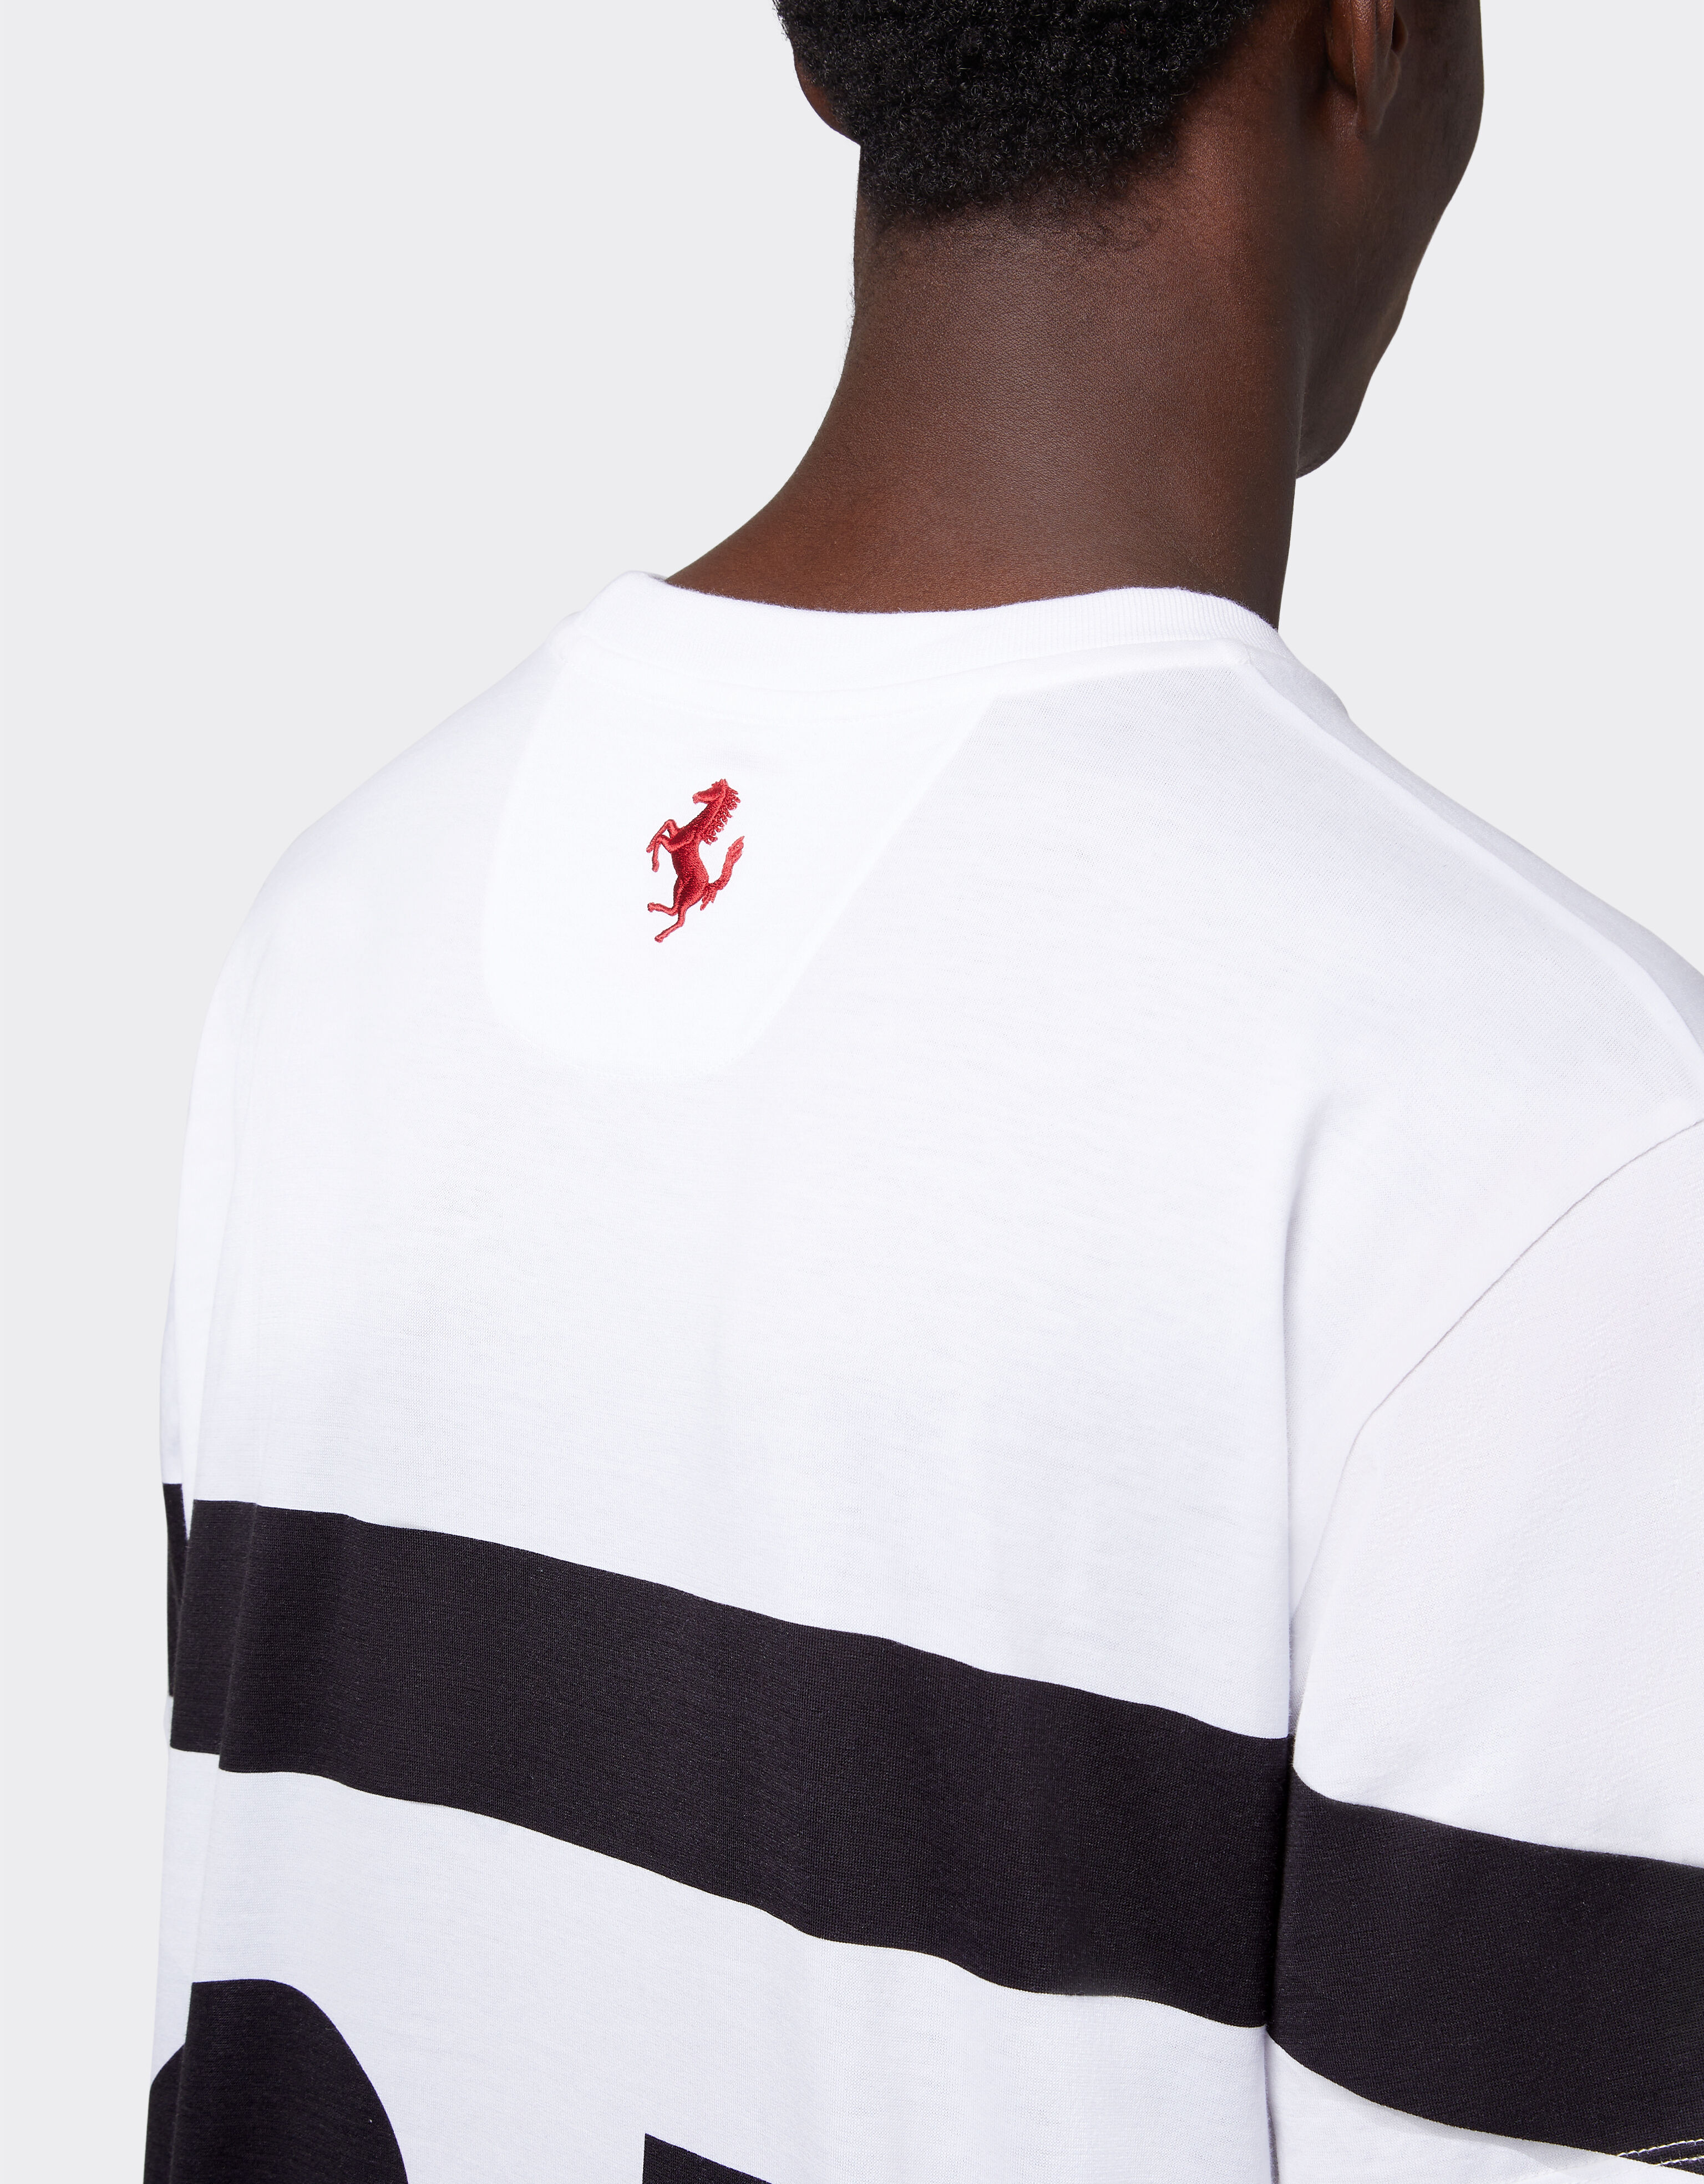 Ferrari Ferrari logo cotton T-shirt Optical White 47036f